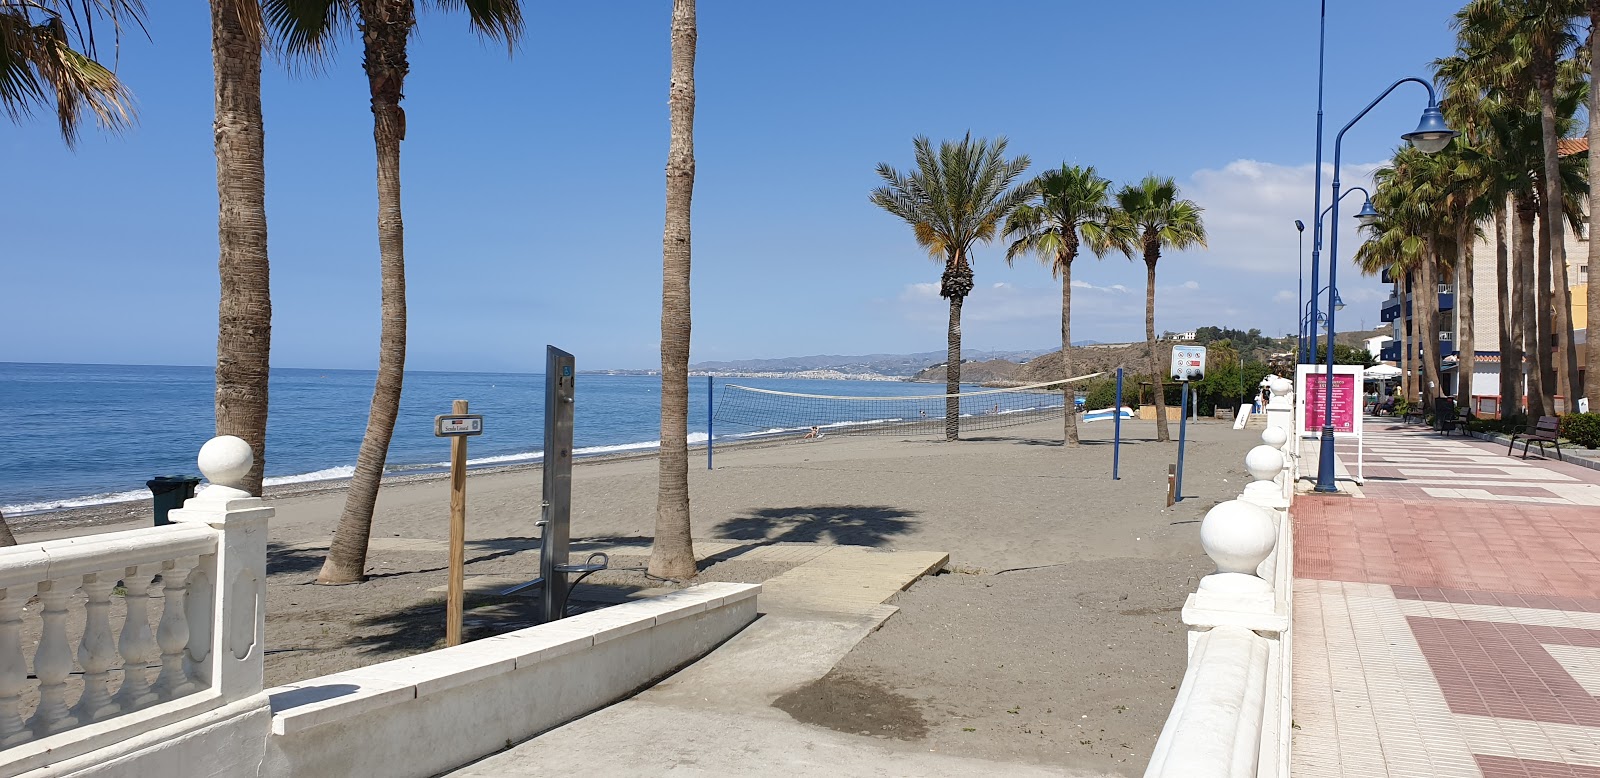 Foto af Playa de el Morche og bosættelsen